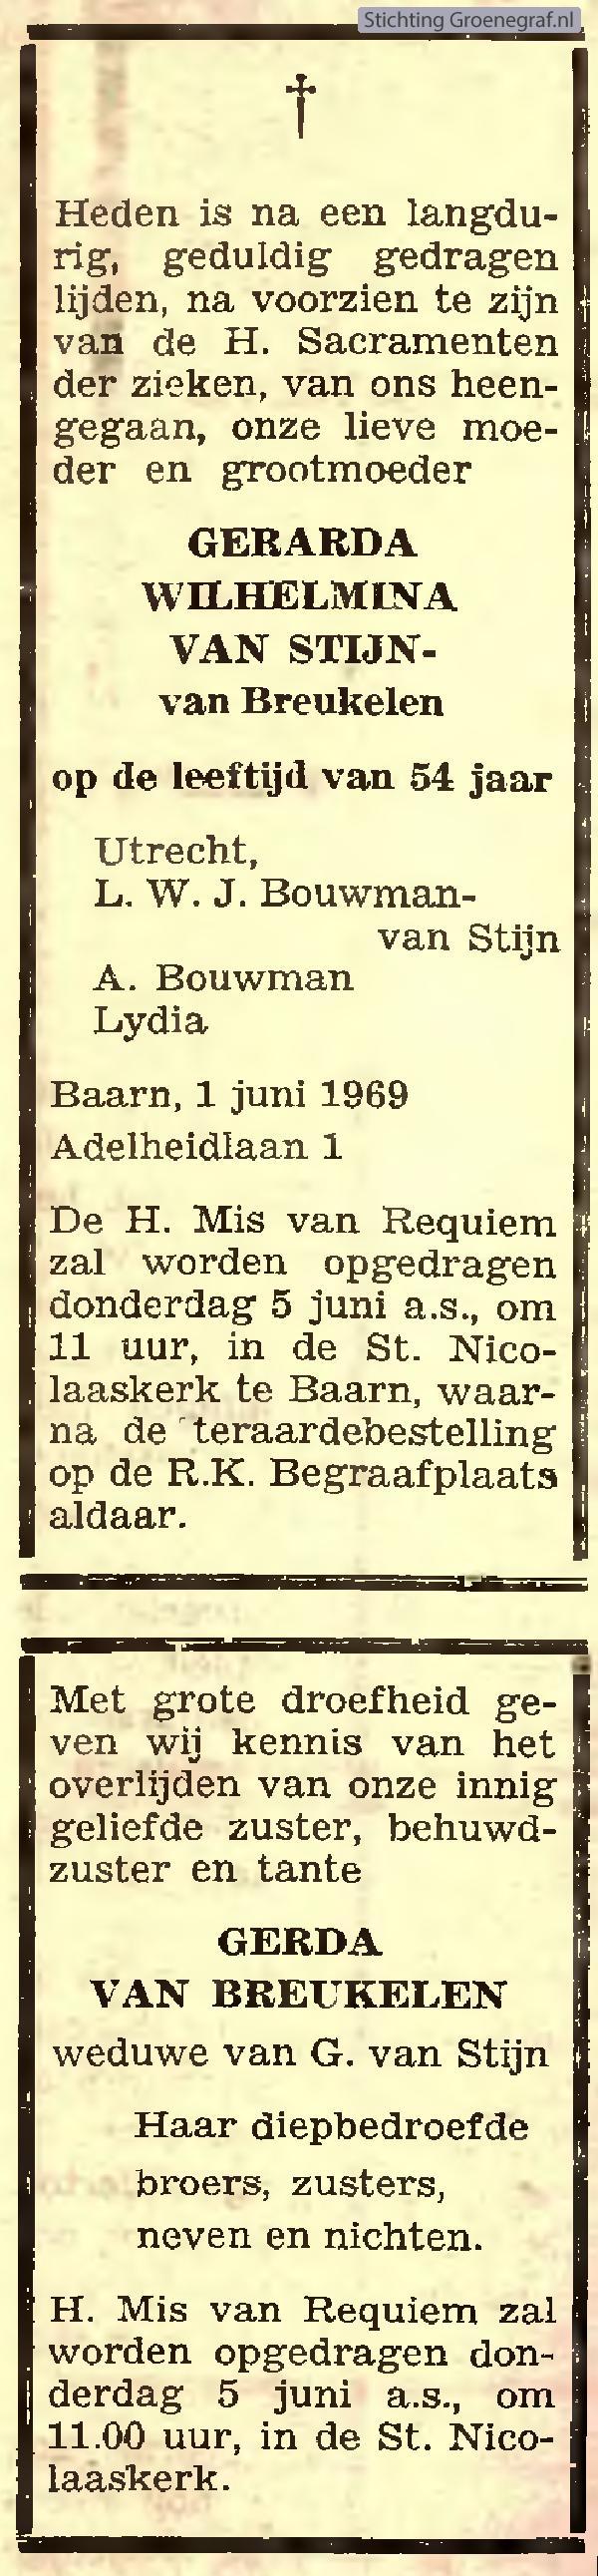 Overlijdensscan Gerarda Wilhelmina van Breukelen